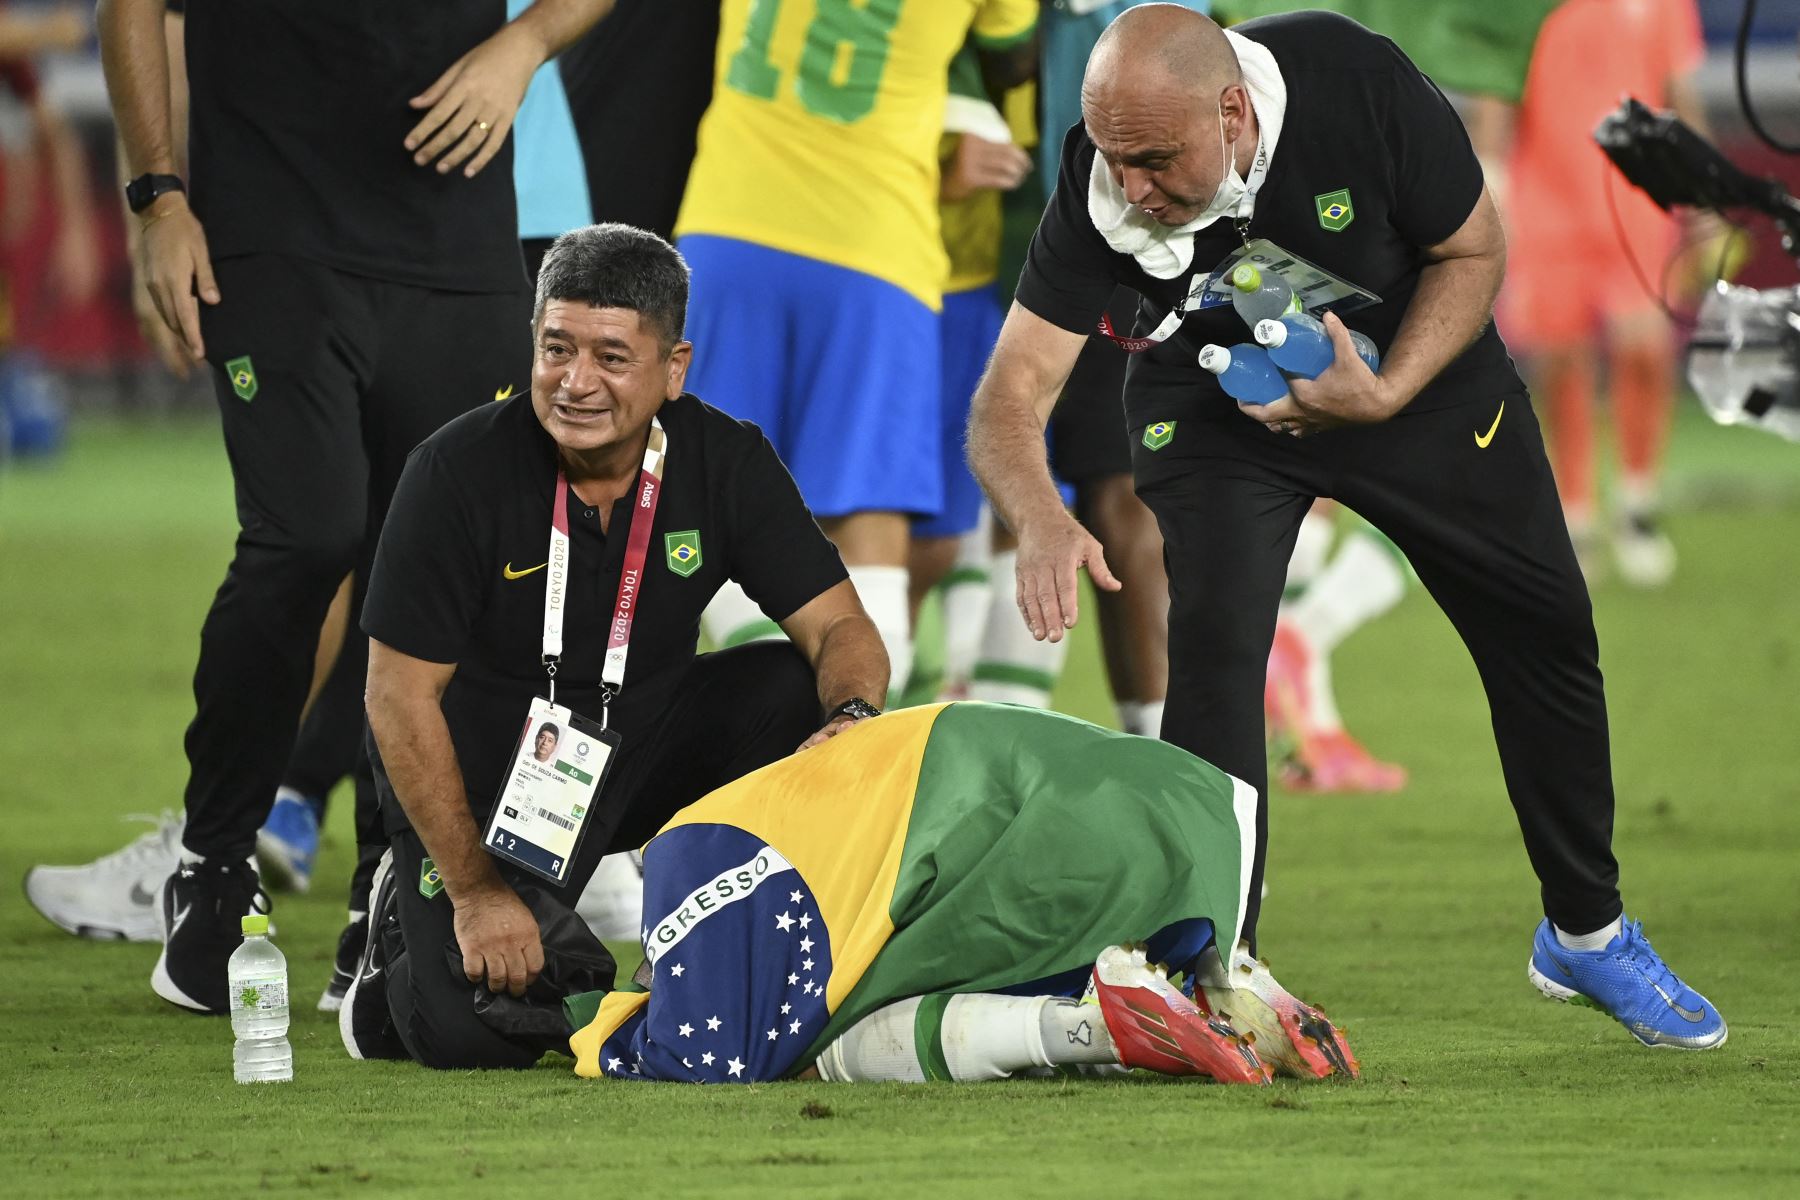 Dani Alves envuelto en una bandera brasileña celebra después de ganar el partido por la medalla de oro masculina de la competencia de fútbol de los Juegos Olímpicos de Tokio 2020. Foto: AFP